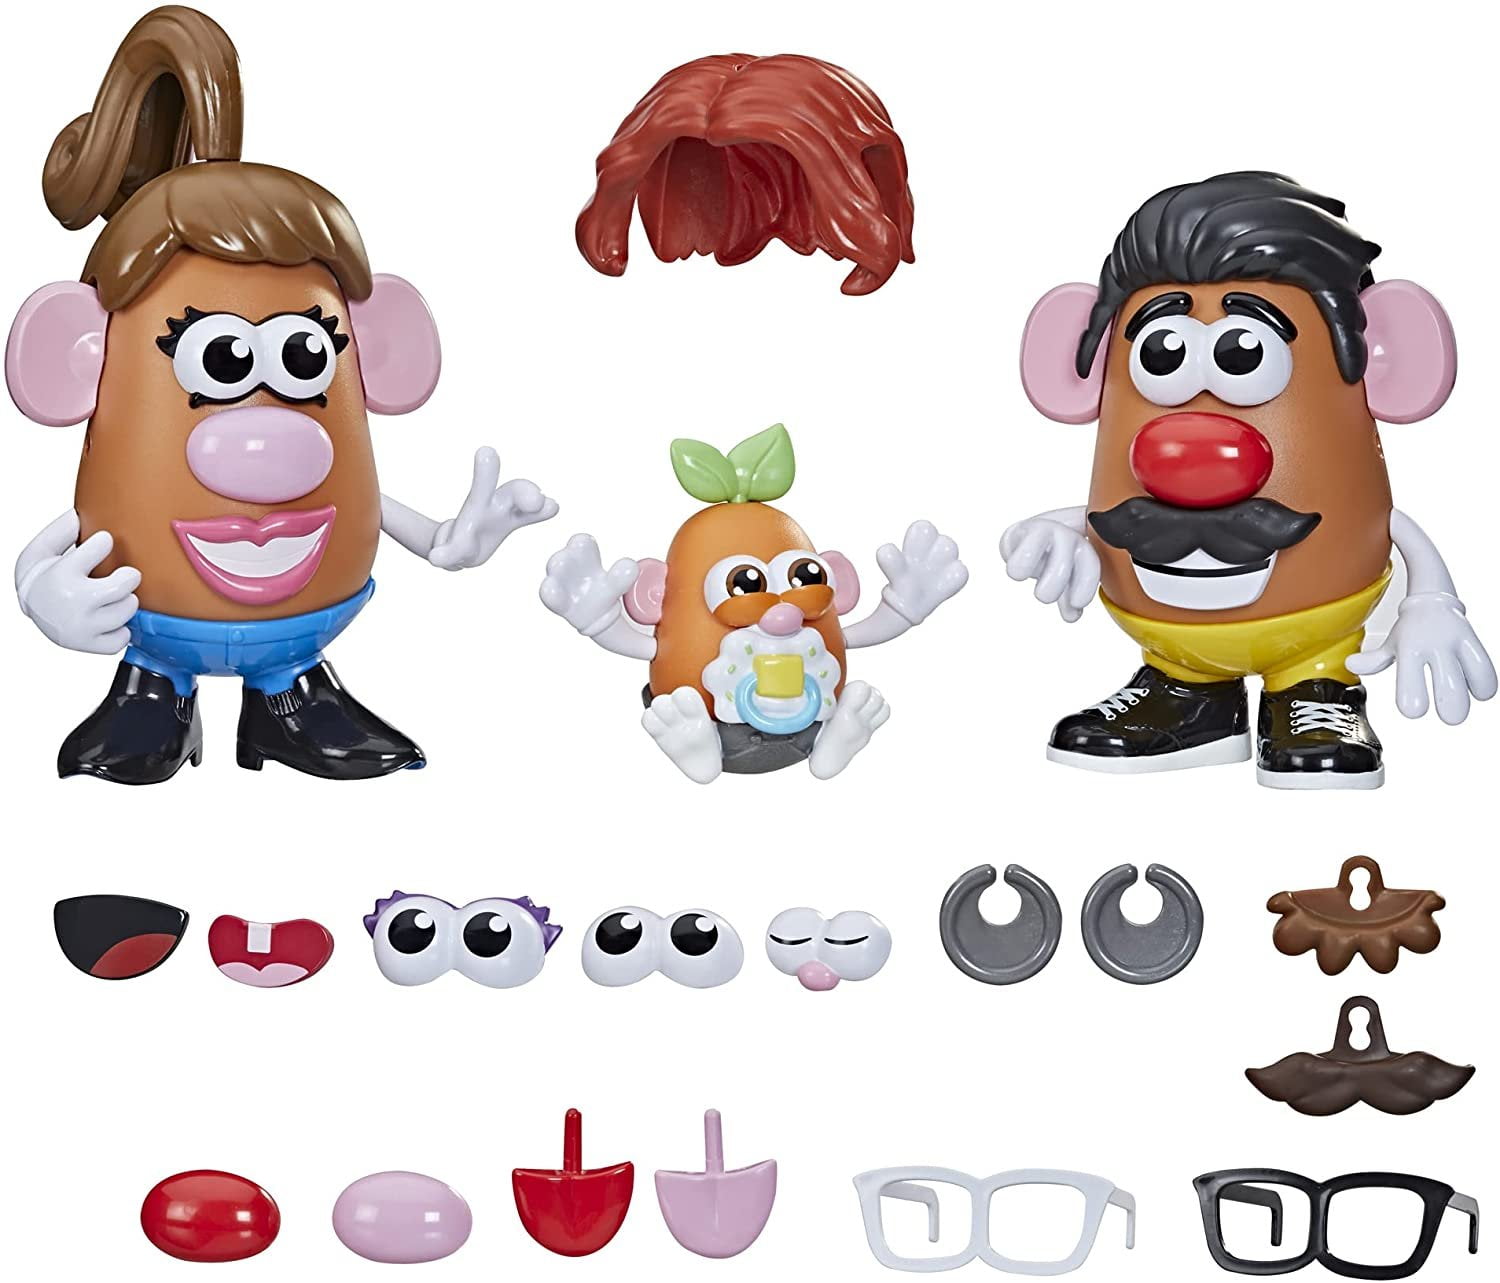 Tara Toys Mr Potato Head Creativity Set 